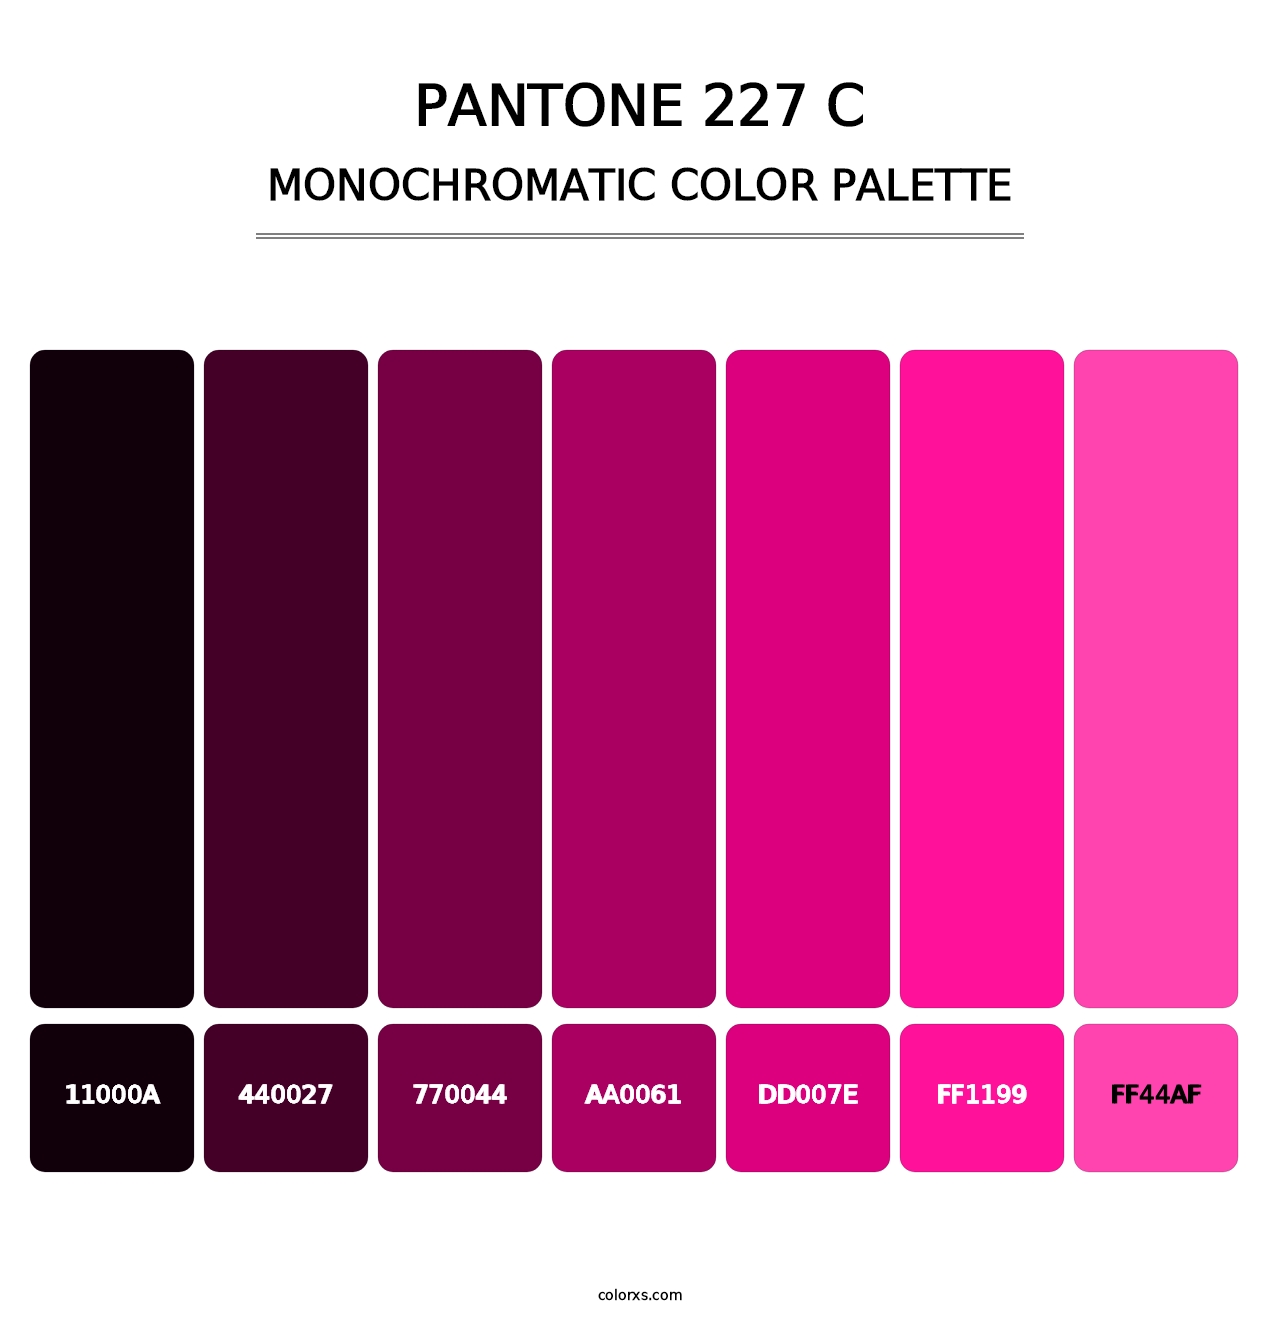 PANTONE 227 C - Monochromatic Color Palette